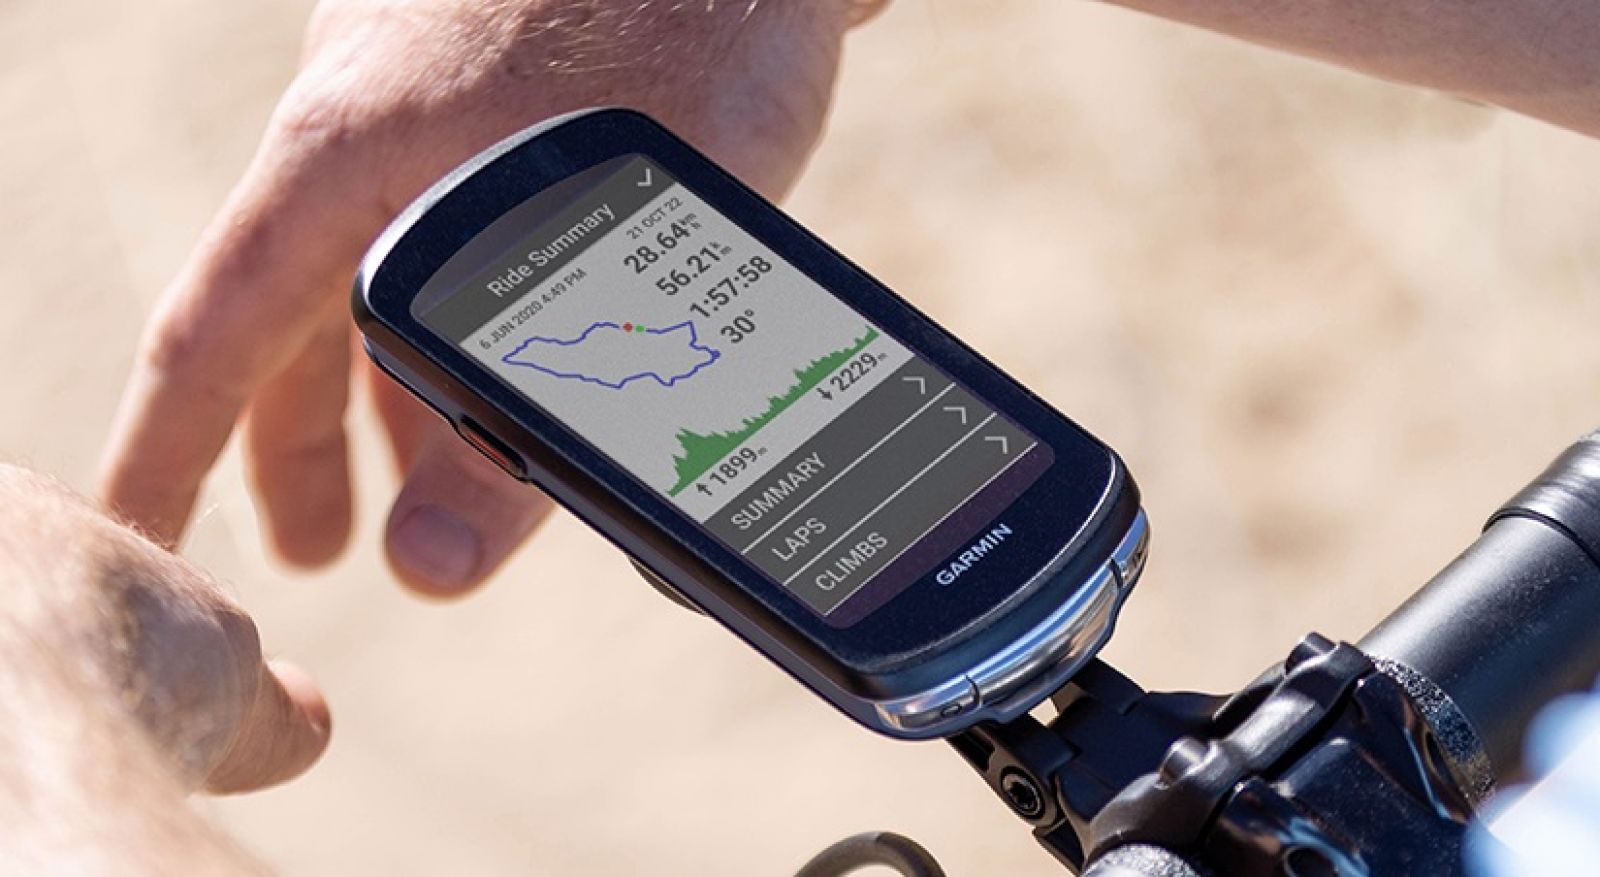 Garmin Edge 1040 Solar Compteur de vélo GPS